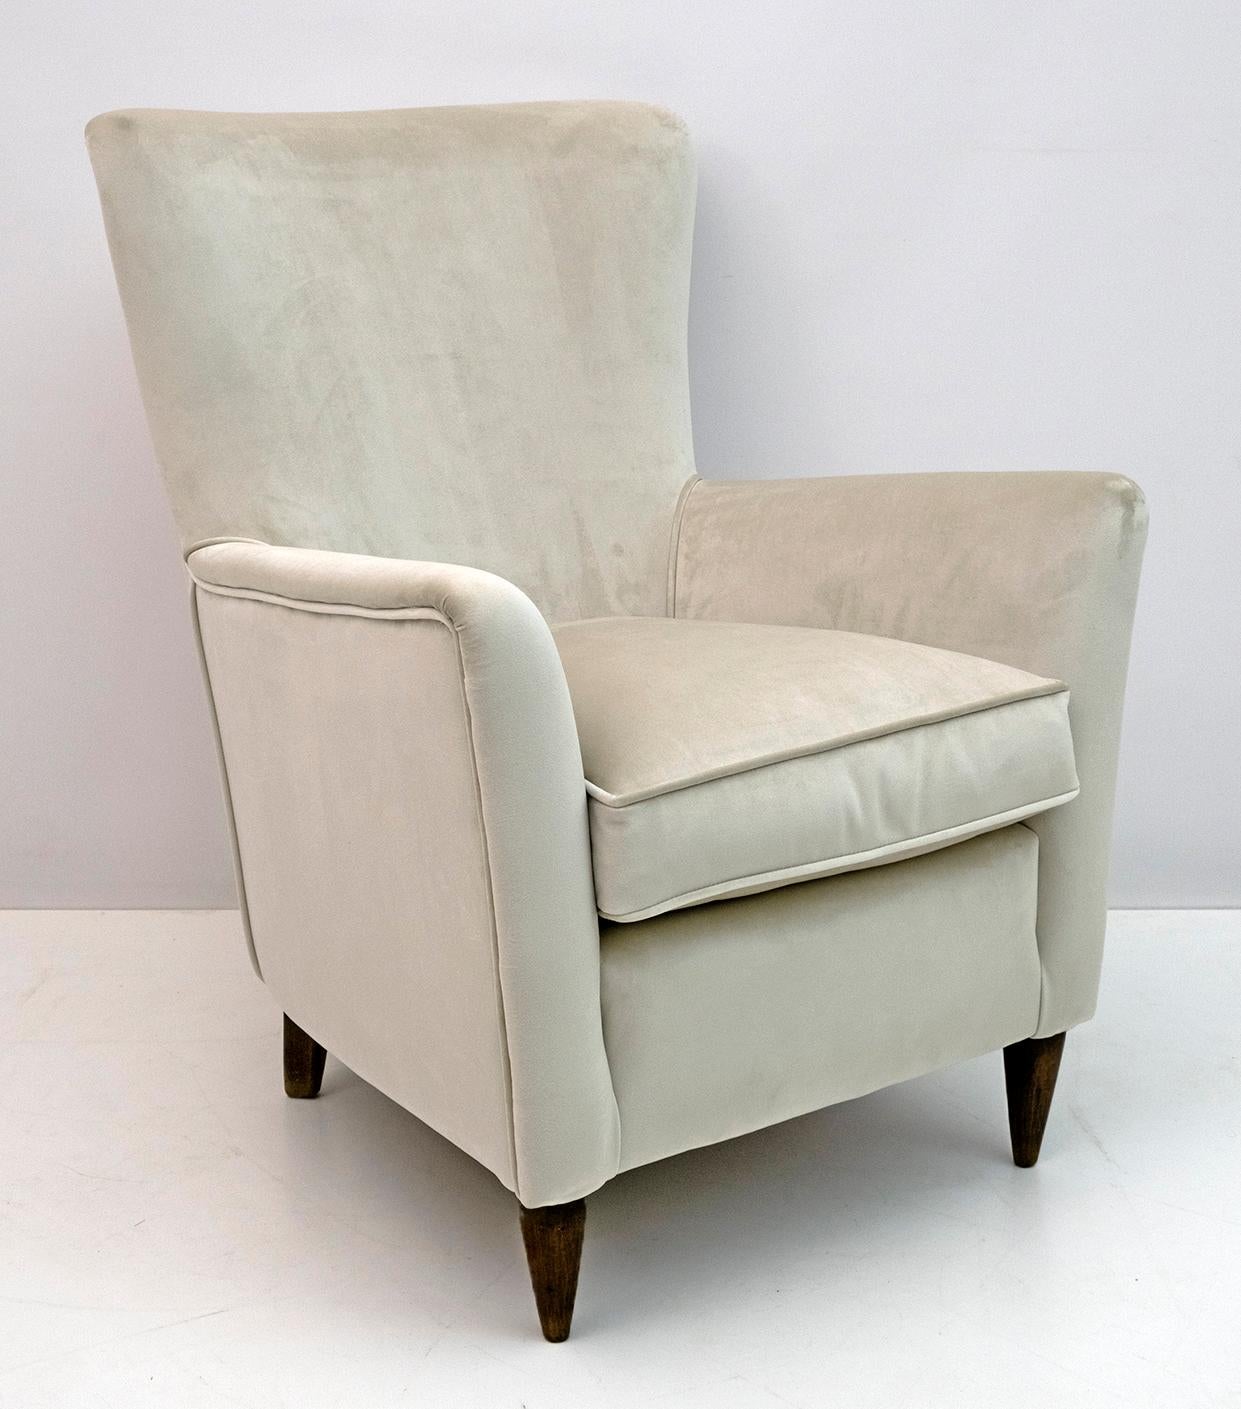 Eleganter und prächtiger Sessel aus der Mitte des Jahrhunderts, Gio Ponti zugeschrieben, 1950 für Edizioni ISA, Bergamo. Der Sessel wurde restauriert und mit einem neuen hellen elfenbeinfarbenen Samtbezug versehen.